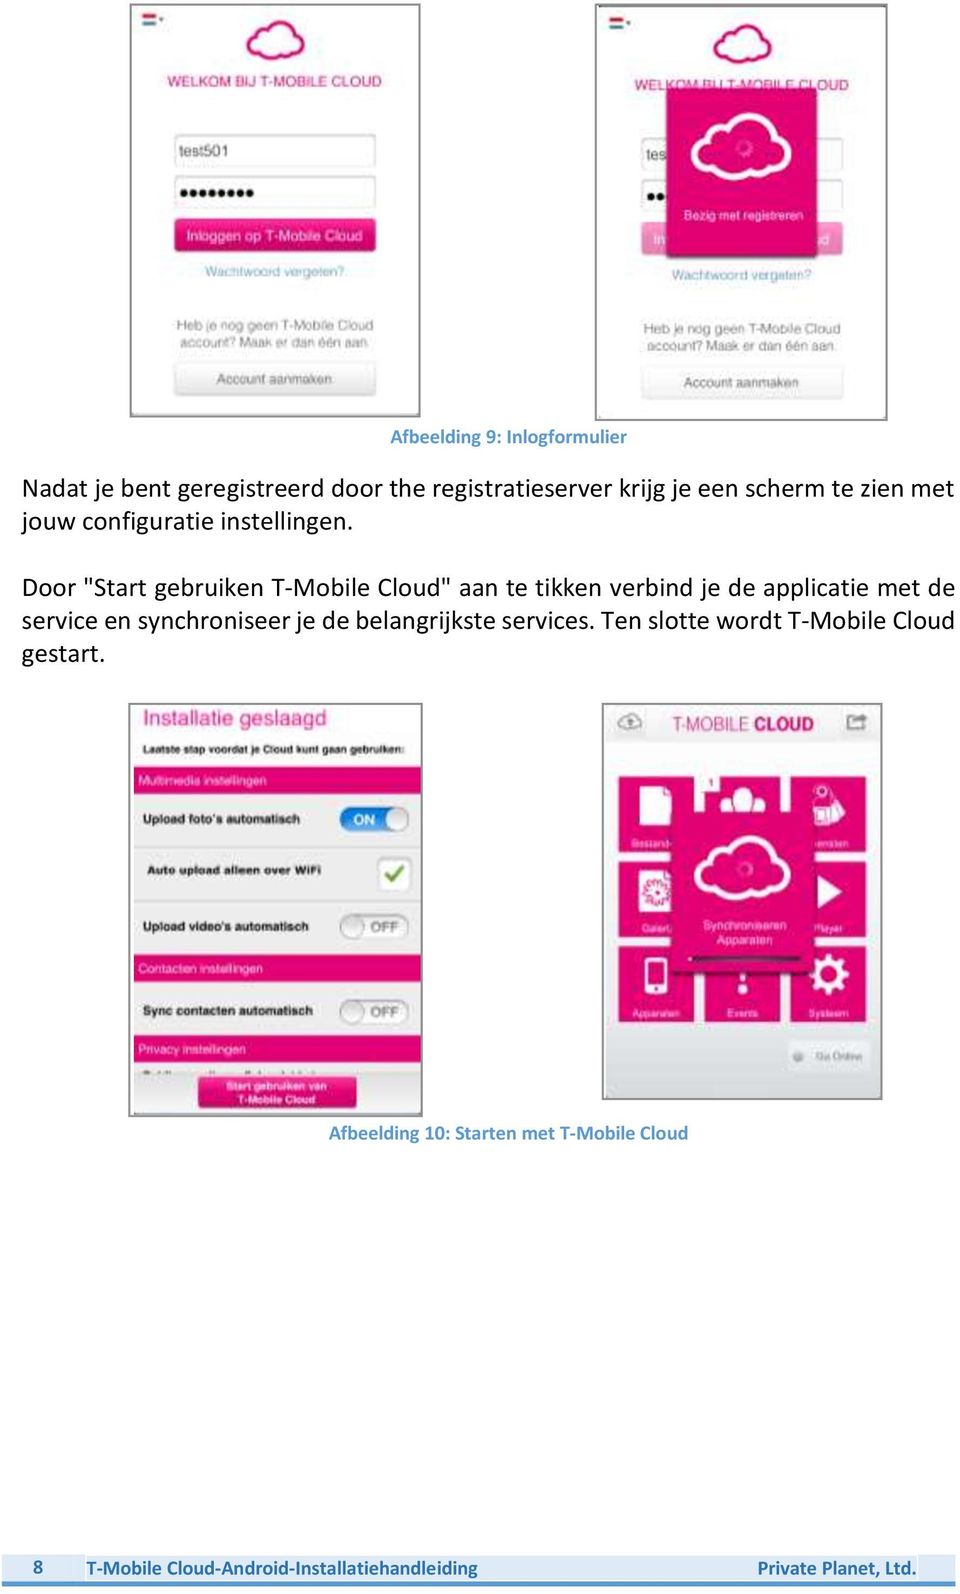 Door "Start gebruiken T-Mobile Cloud" aan te tikken verbind je de applicatie met de service en synchroniseer